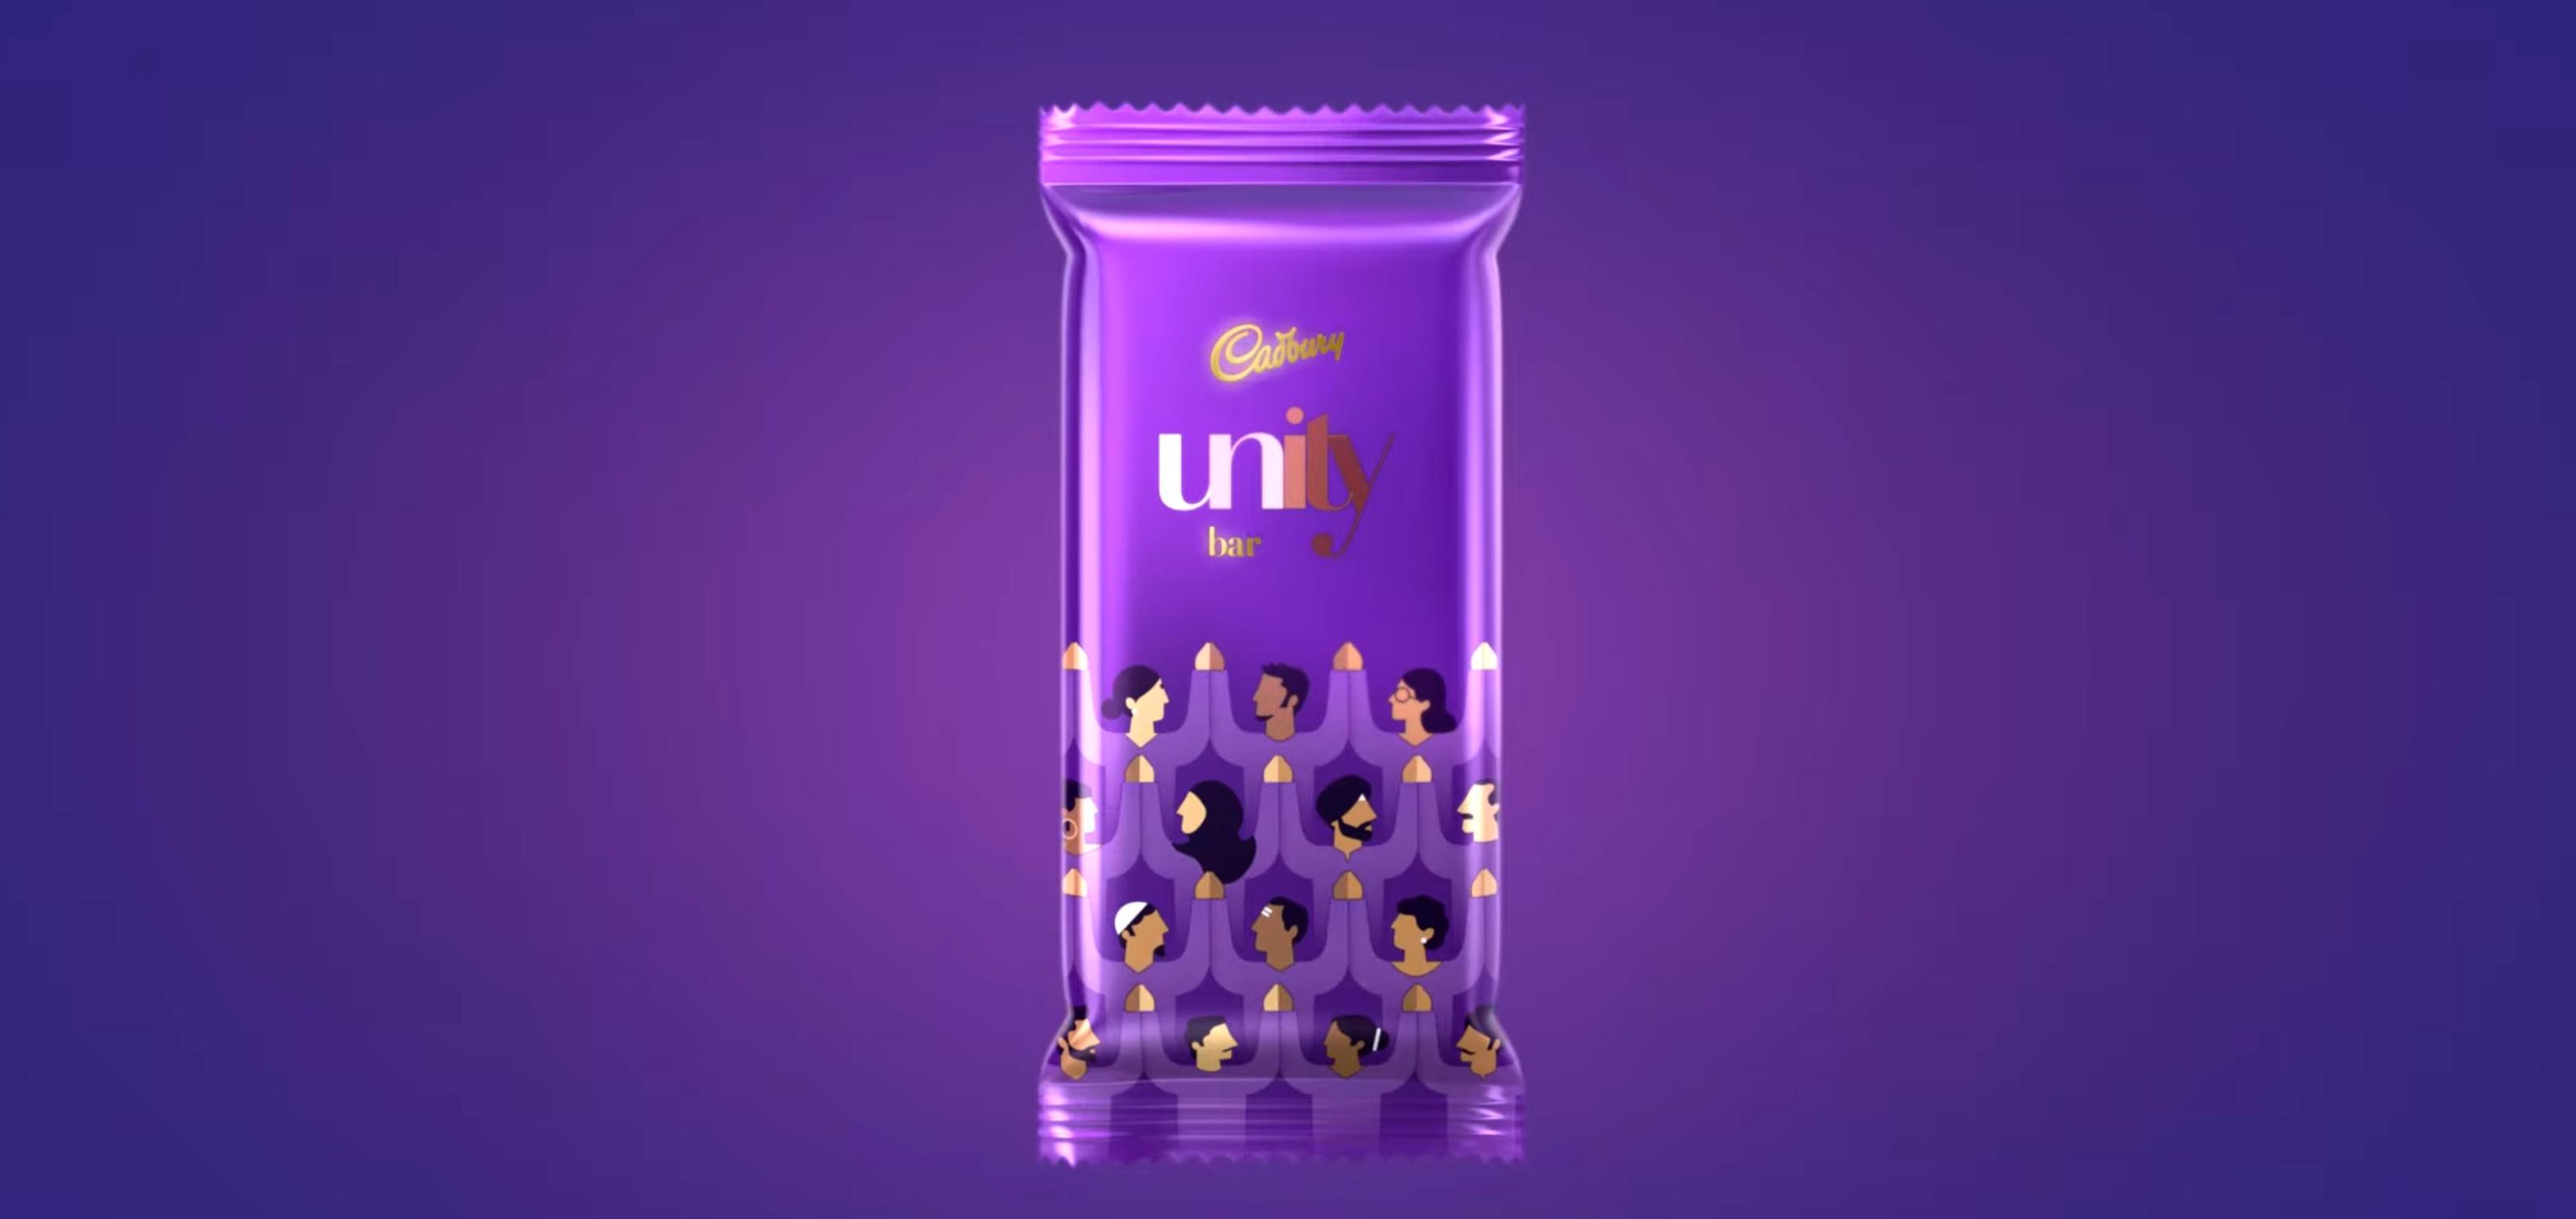 Cadburry sensibilise sur les différences avec une idée surprenante au travers de son chocolat